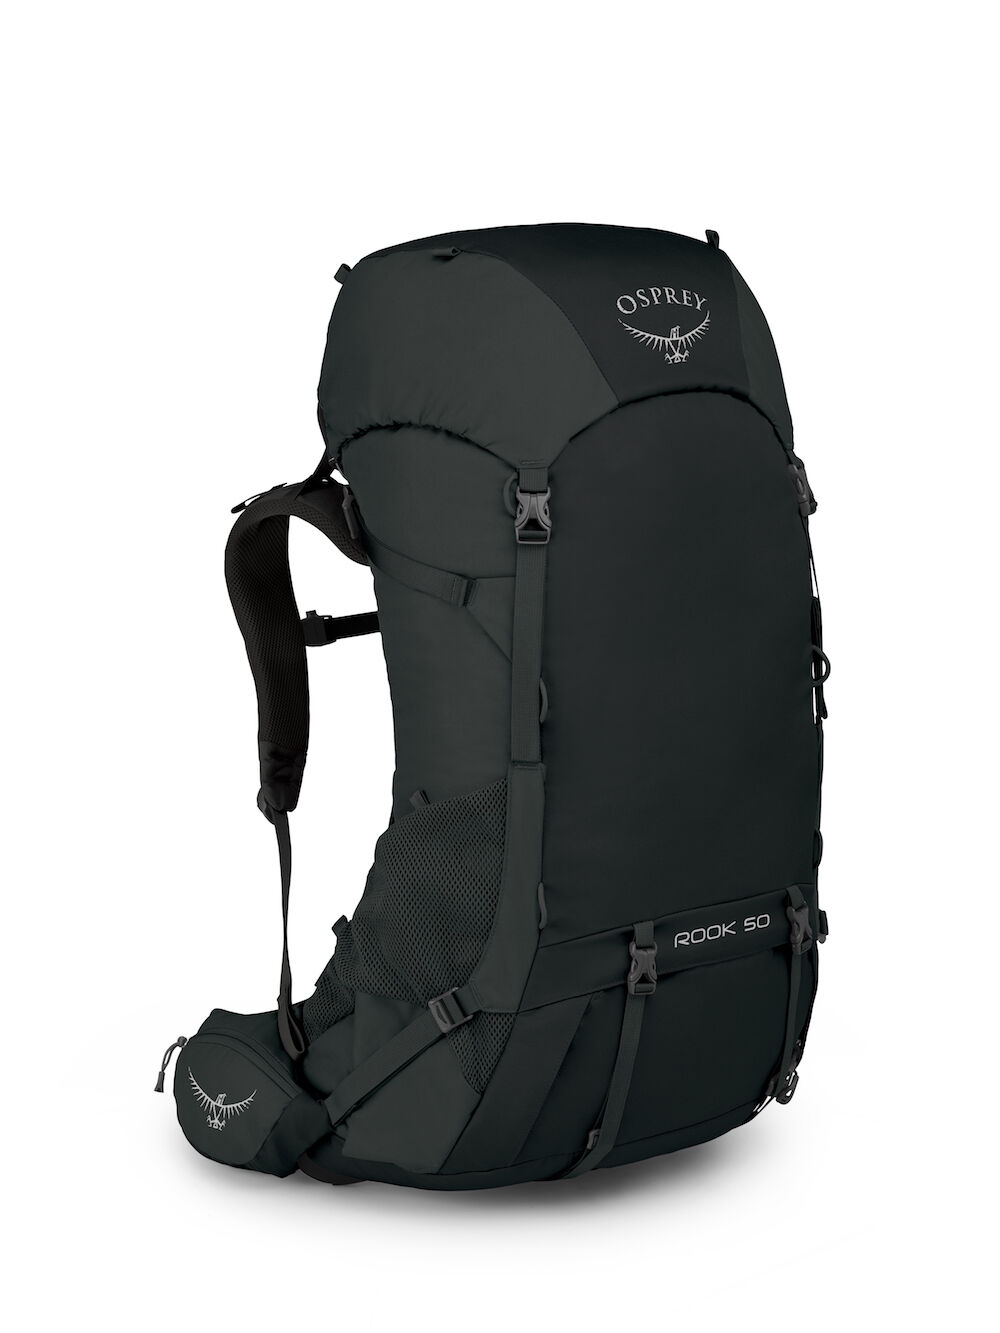 Osprey Rook 50 - Hiking backpack - Men's